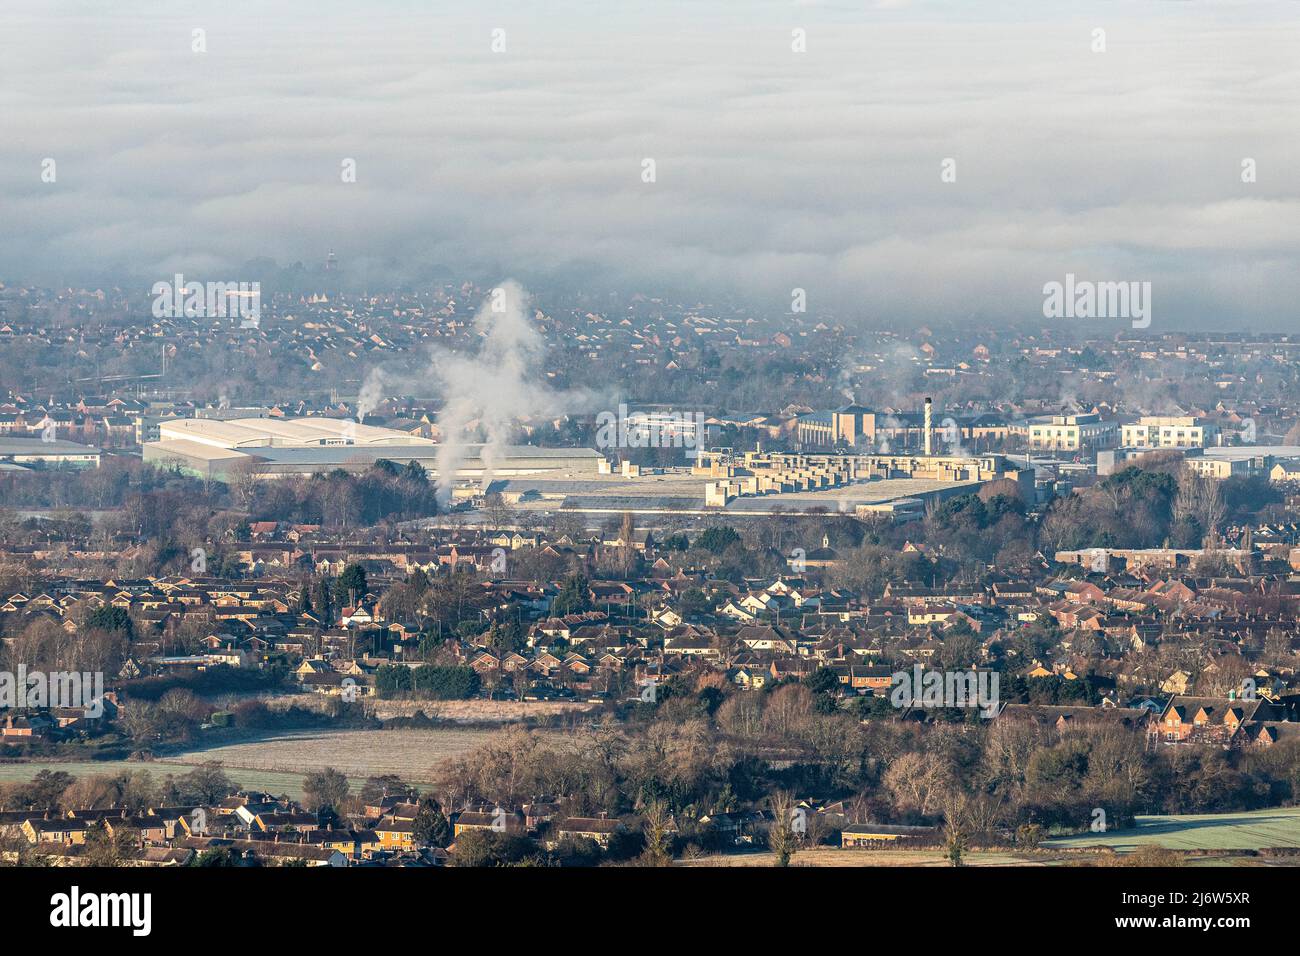 Un'inversione di temperatura che causa nebbia per oscurare la città di Gloucester, Inghilterra Regno Unito. Il Gloucester Business Park di Brockworth è in primo piano. Foto Stock